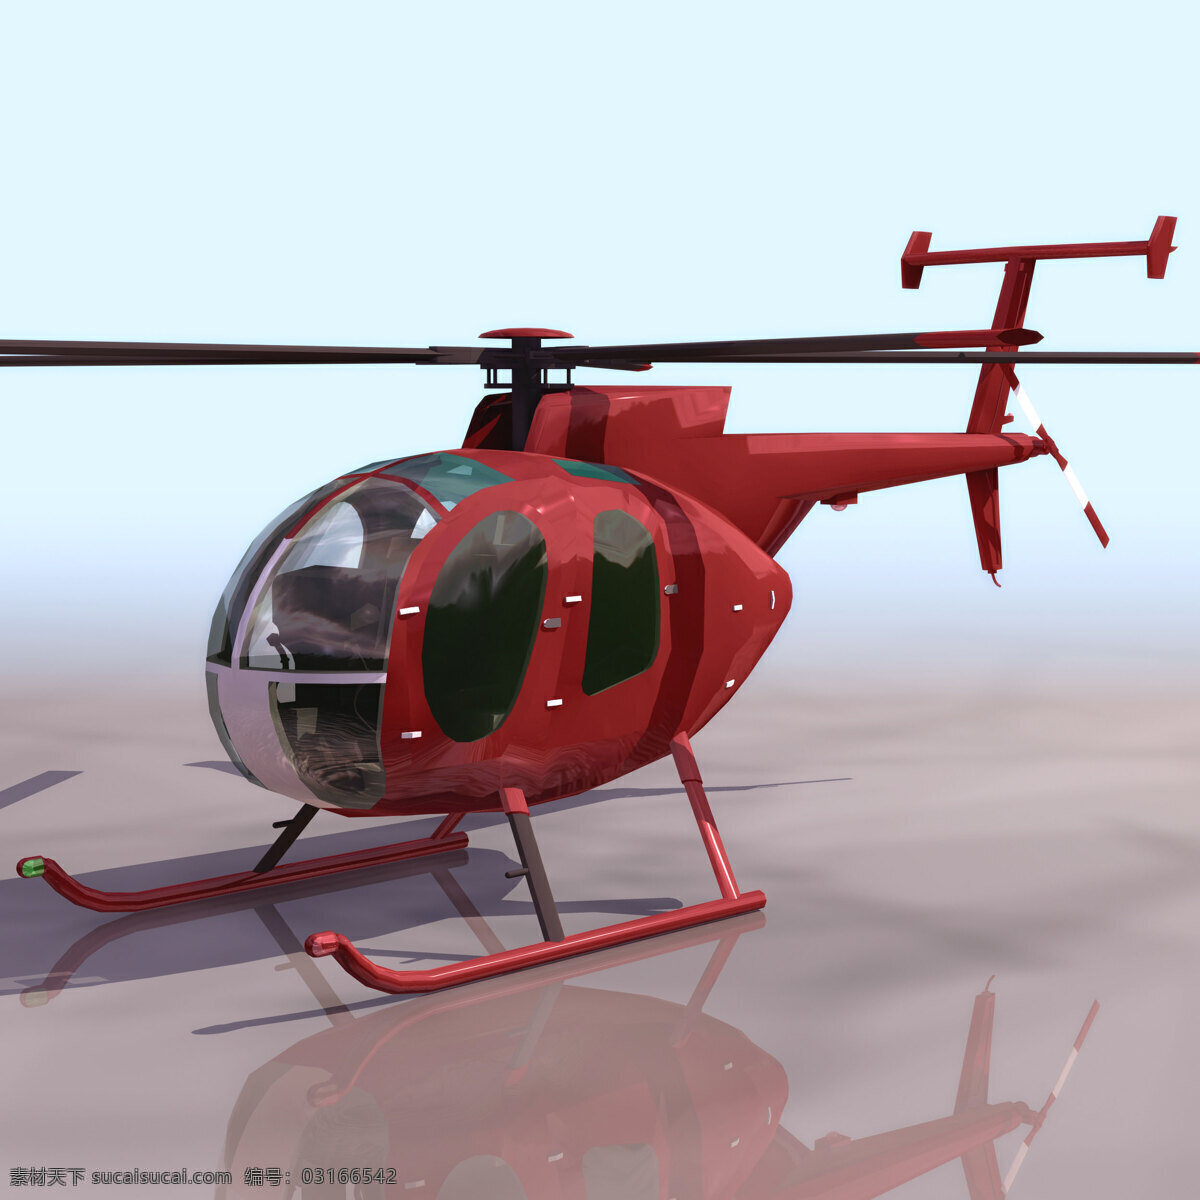 直升机 模型 直升机模型 民用飞机 3d模型素材 电器模型